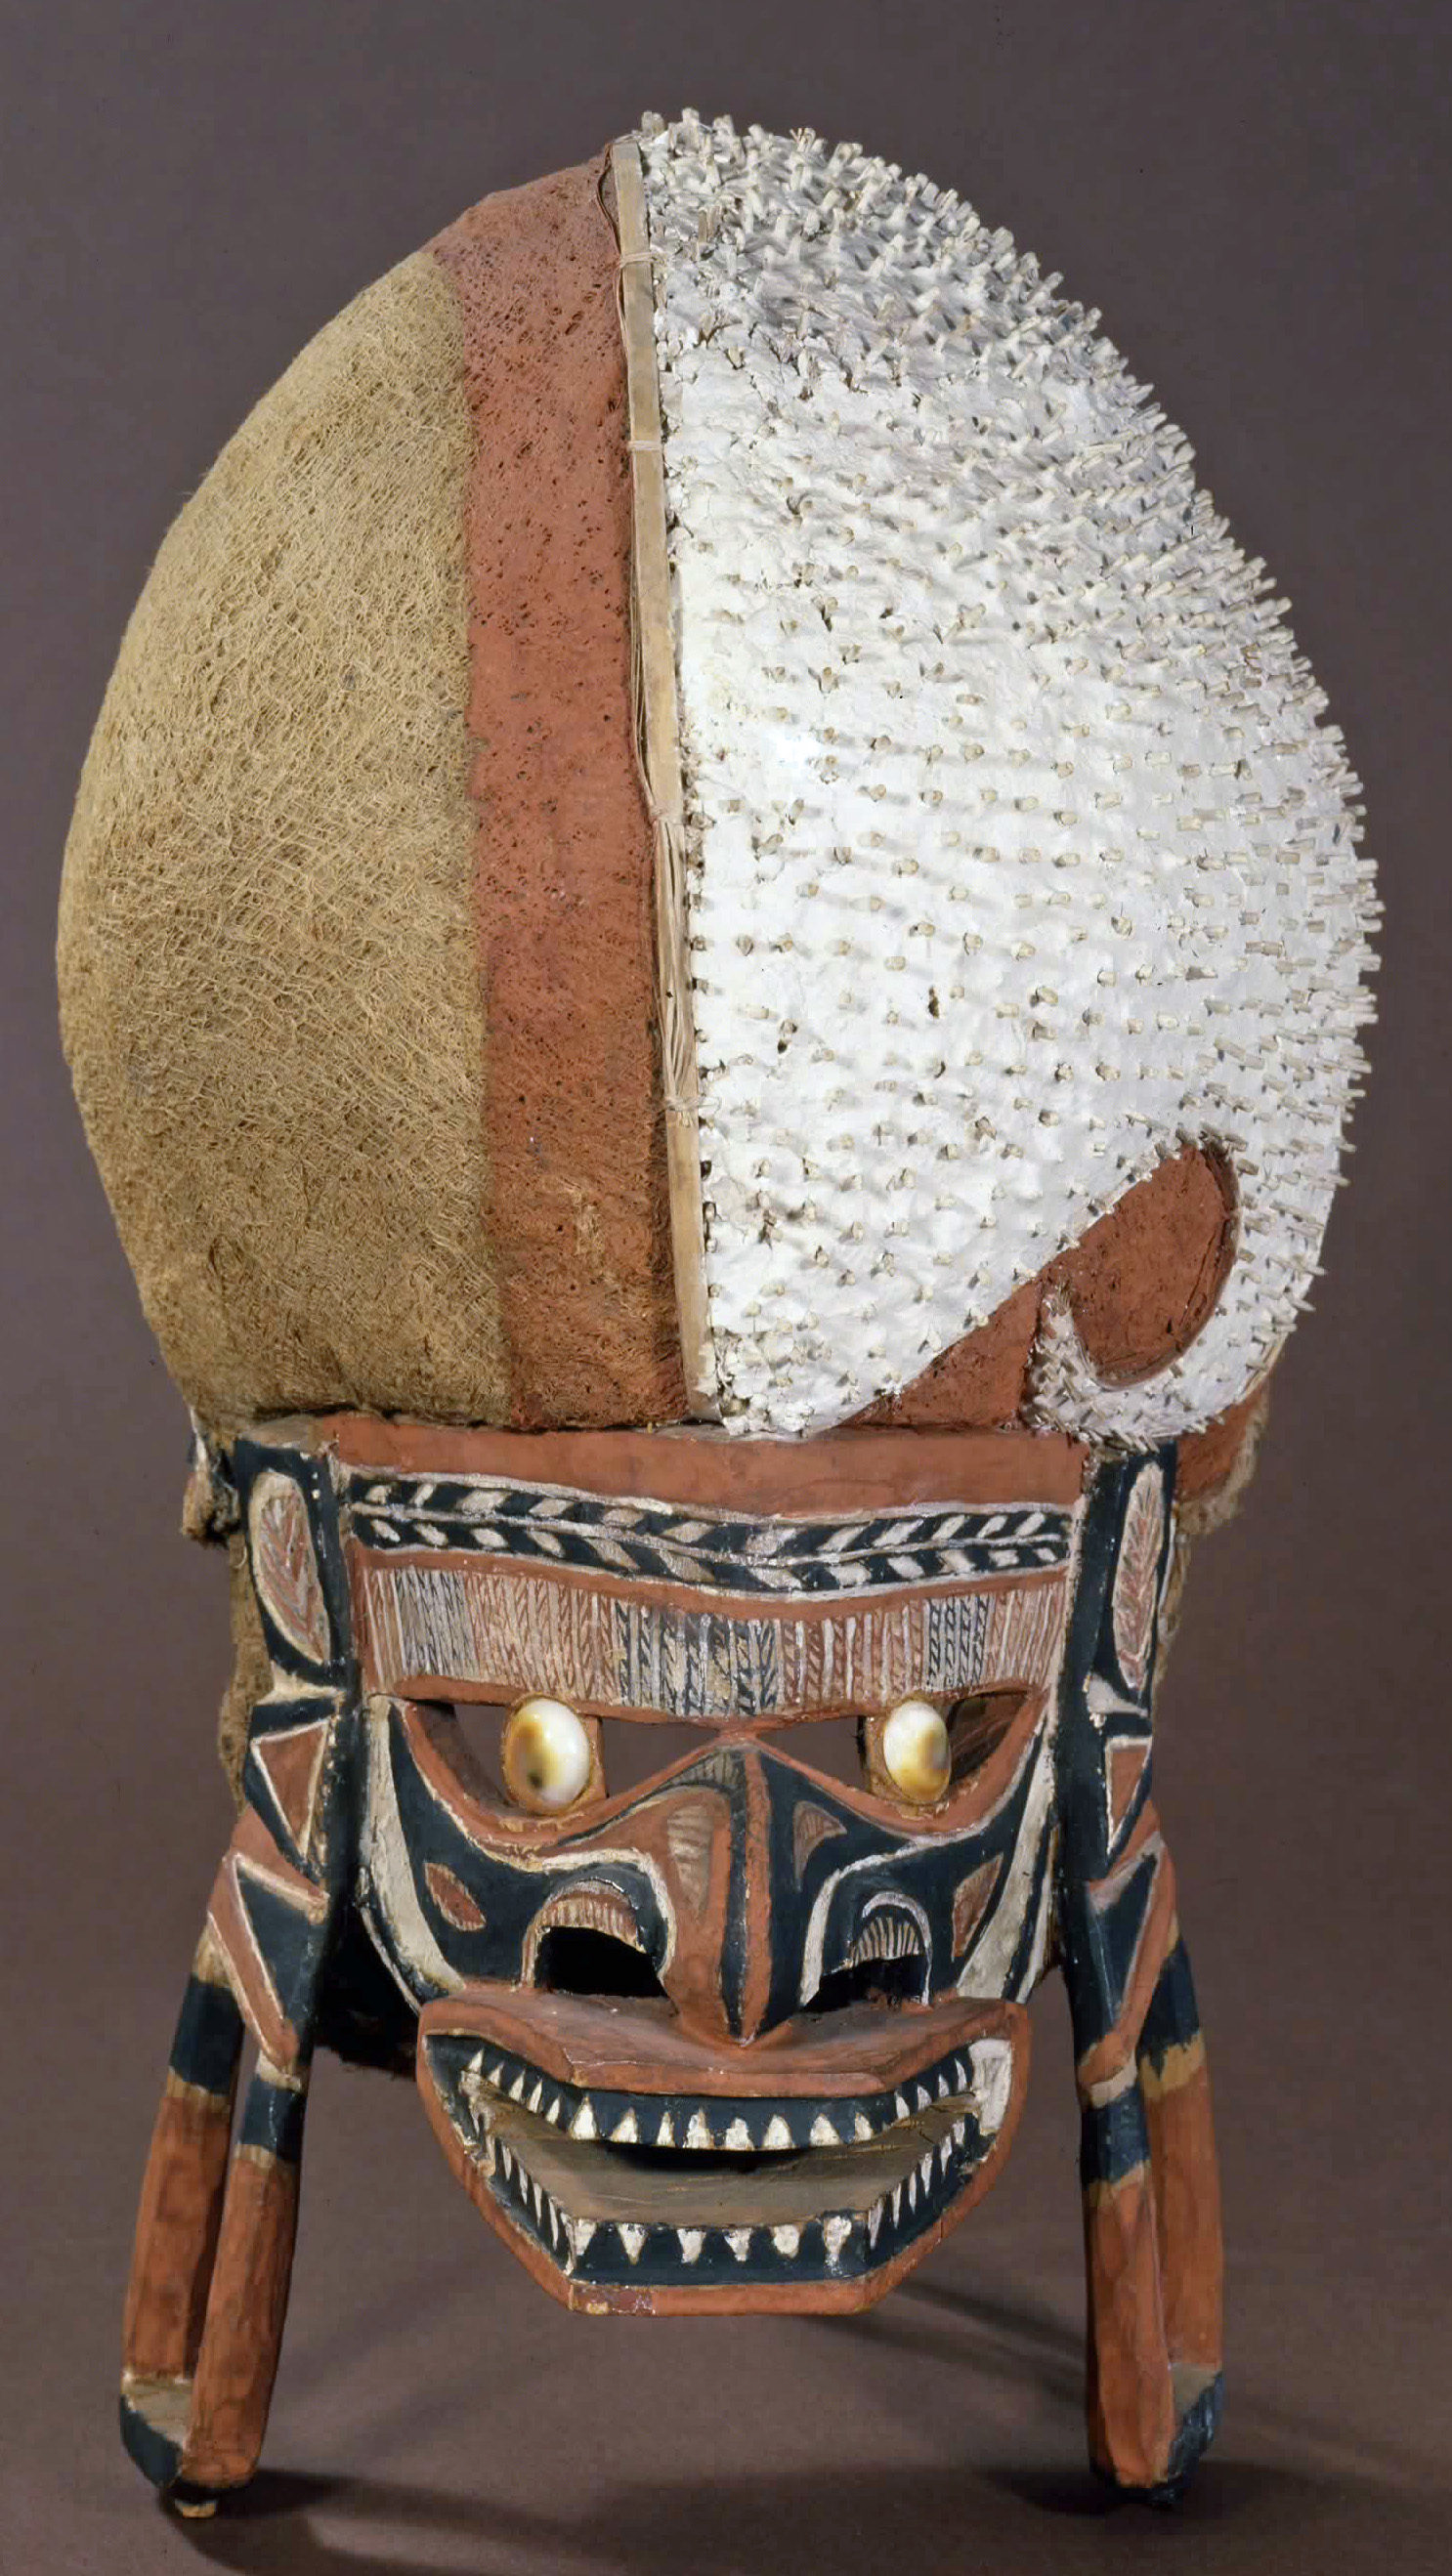 Malanggan Maske aus Holz und anderen Naturmaterialien (Wird bei Klick vergrößert)